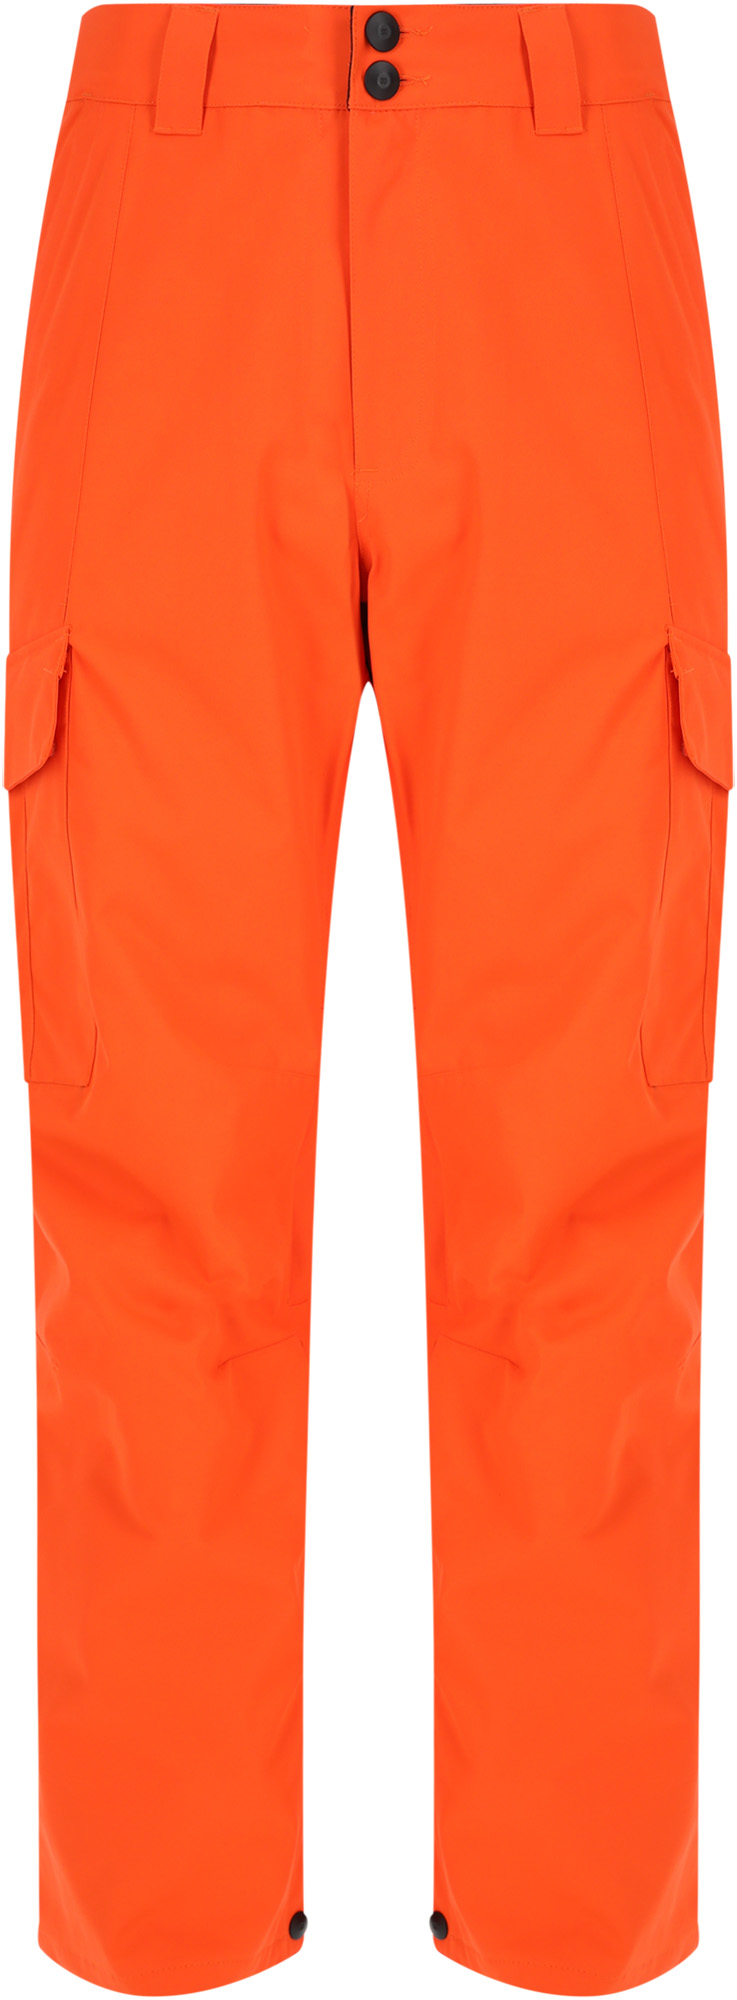 Спортивные брюки DC Banshee orangeade, L INT